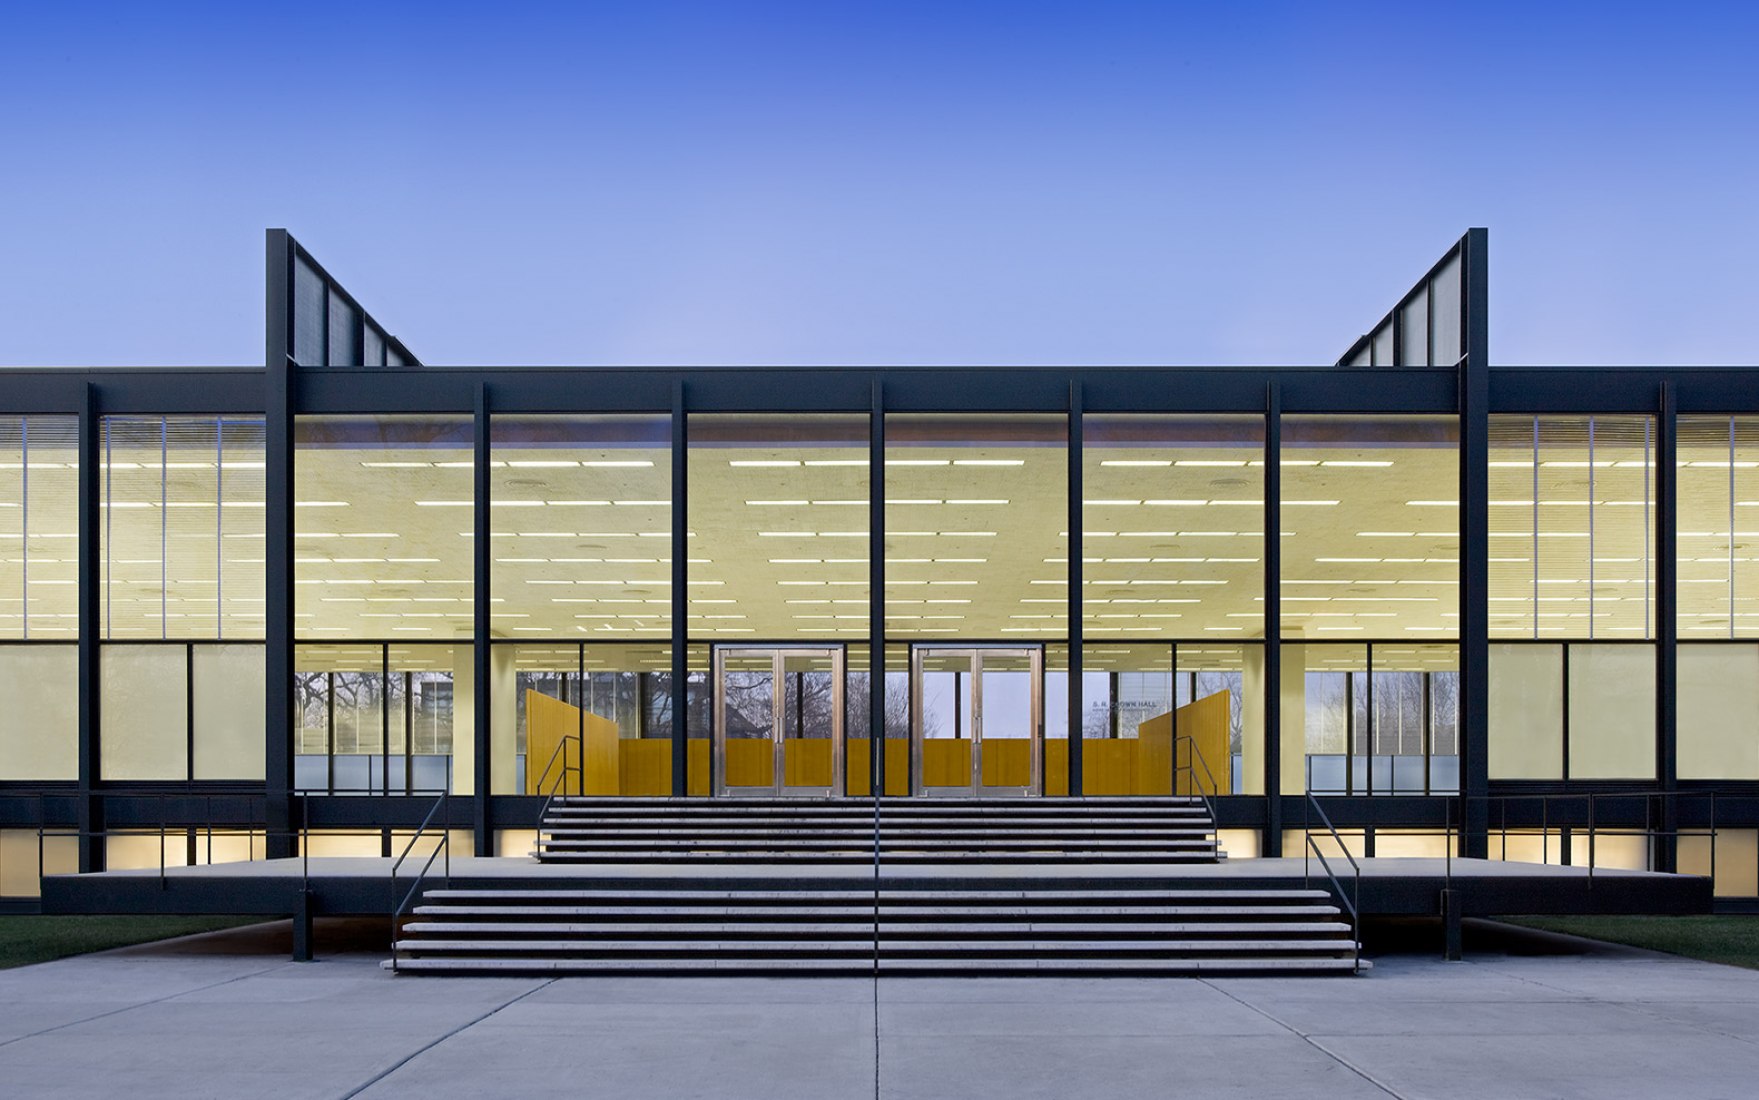 Restauración de Mies van der Rohe: S.R. Crown Hall por Krueck and Sexton Architects. Fotografía © Bill Zbaren. Cortesía de Krueck and Sexton Architects